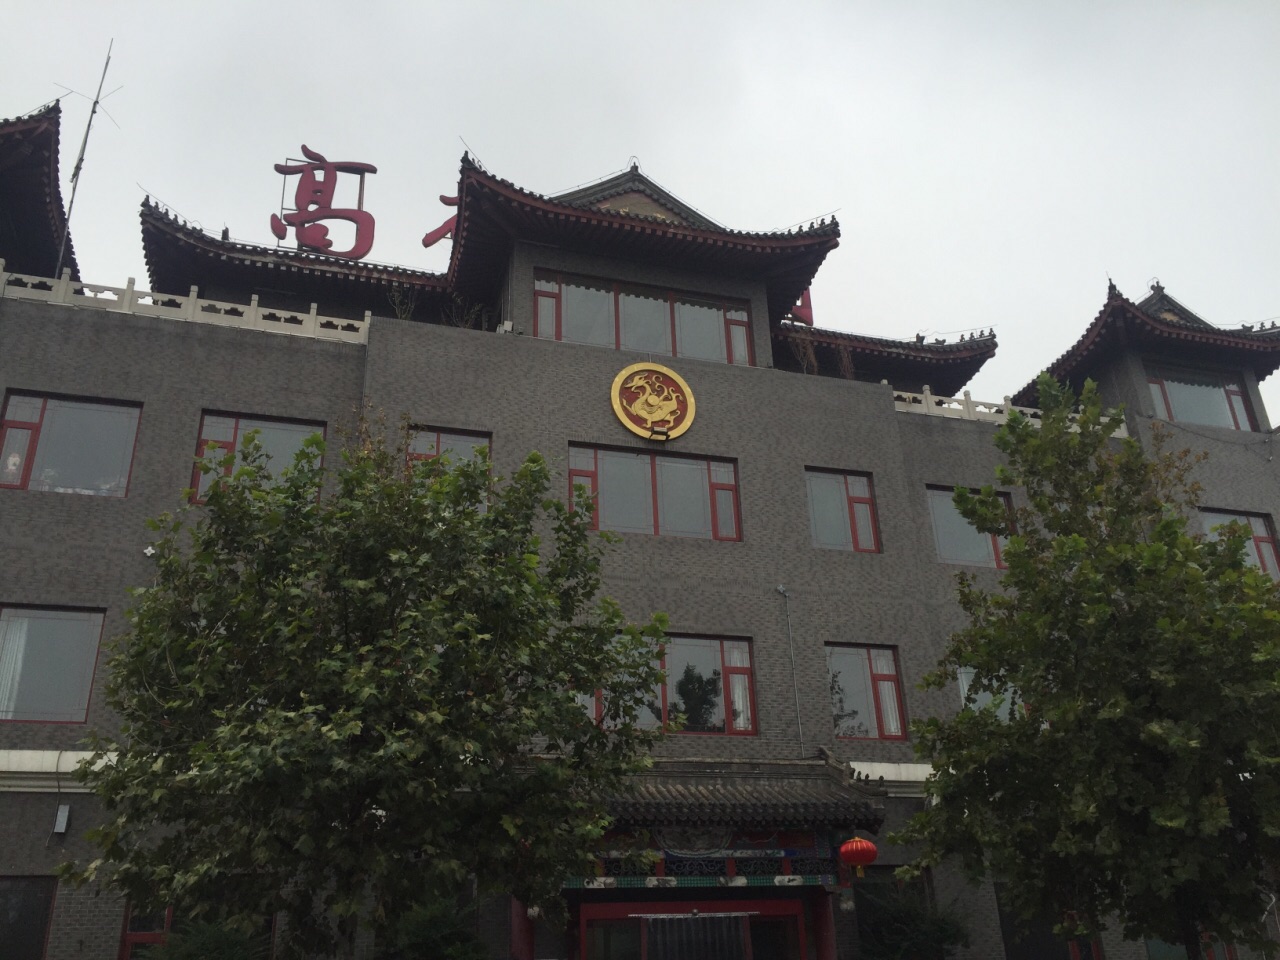 落,位于朝阳区和通州区的交界处,靠着通惠河,高碑店村史博物馆就建立